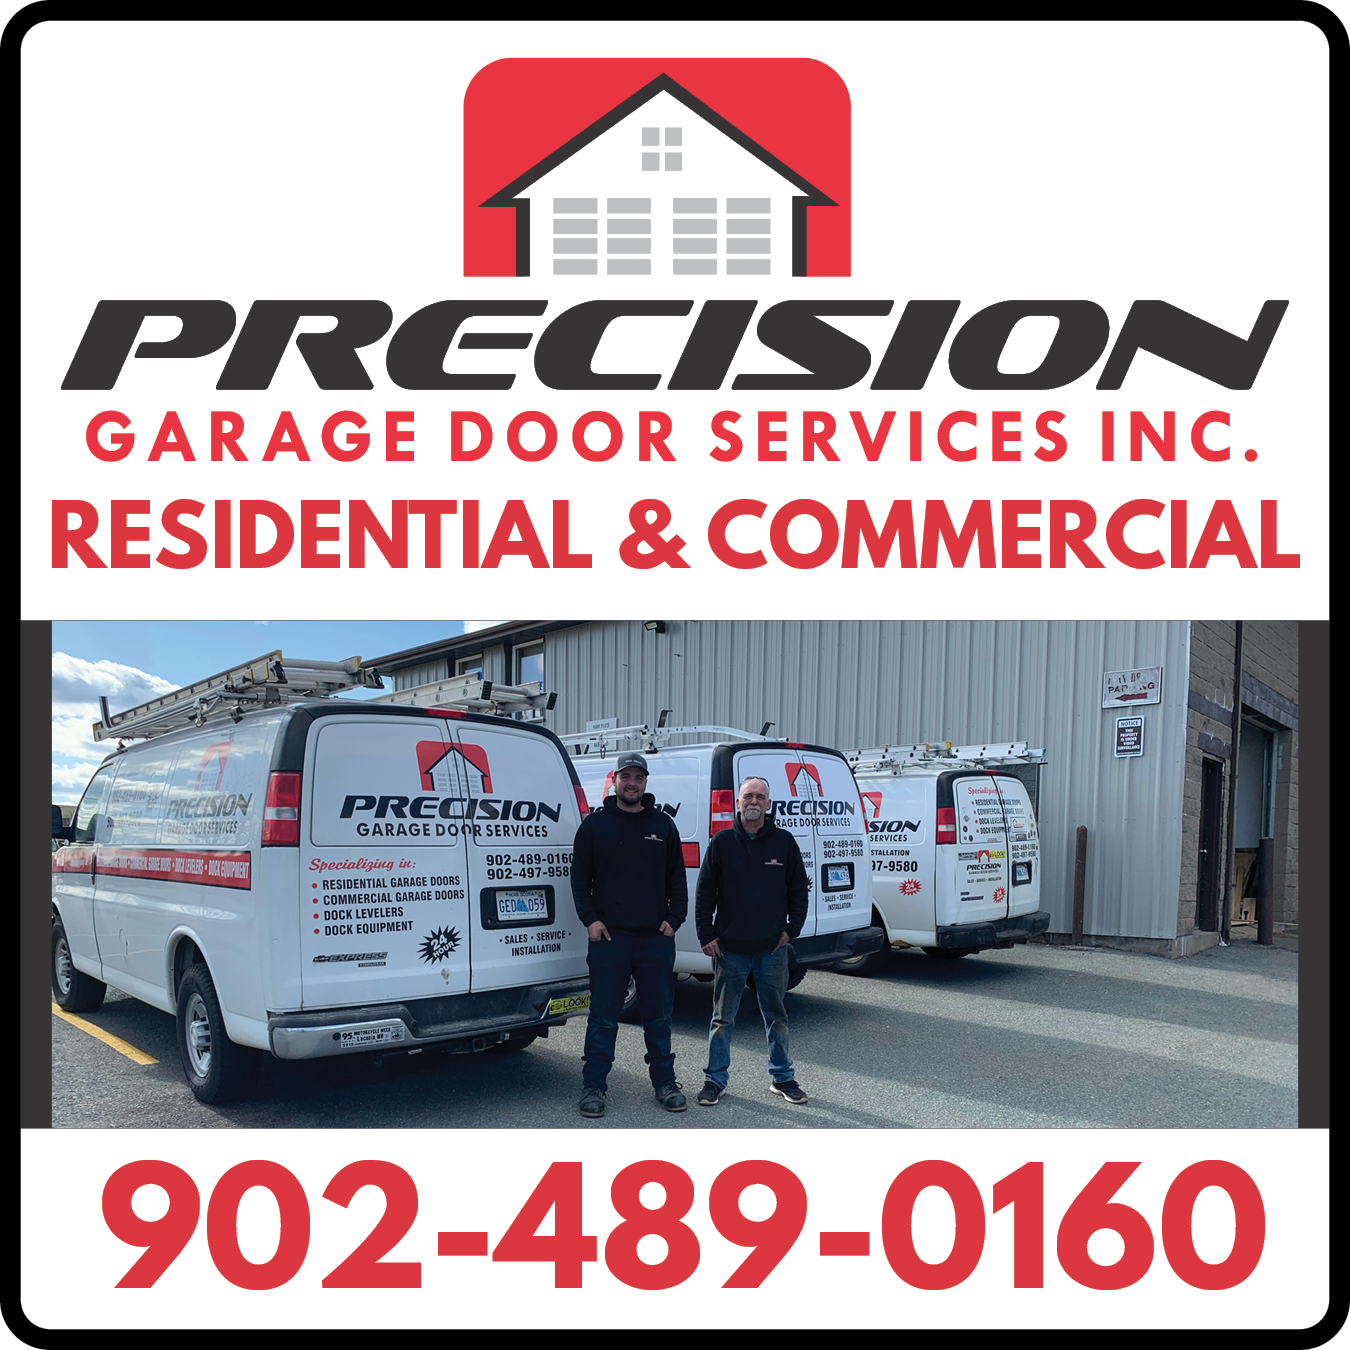 Precision Garage Door Services